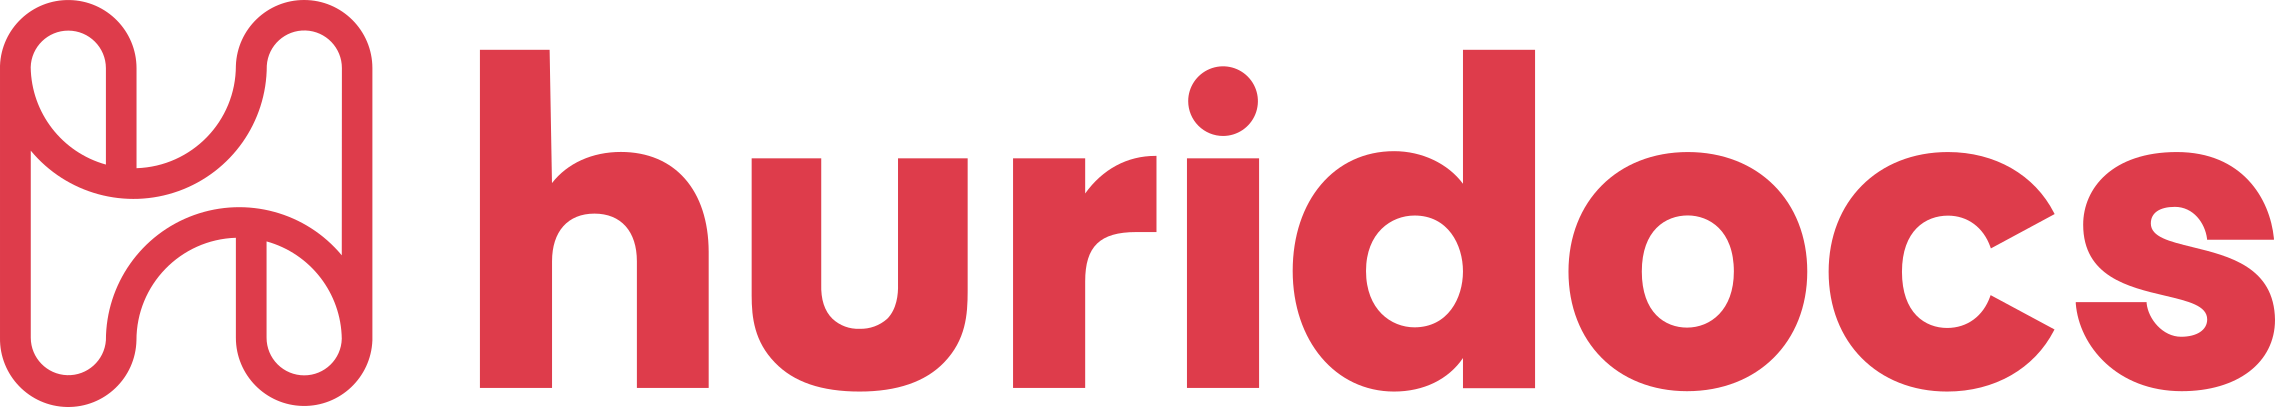 HURIDOCS red partial logo name icon